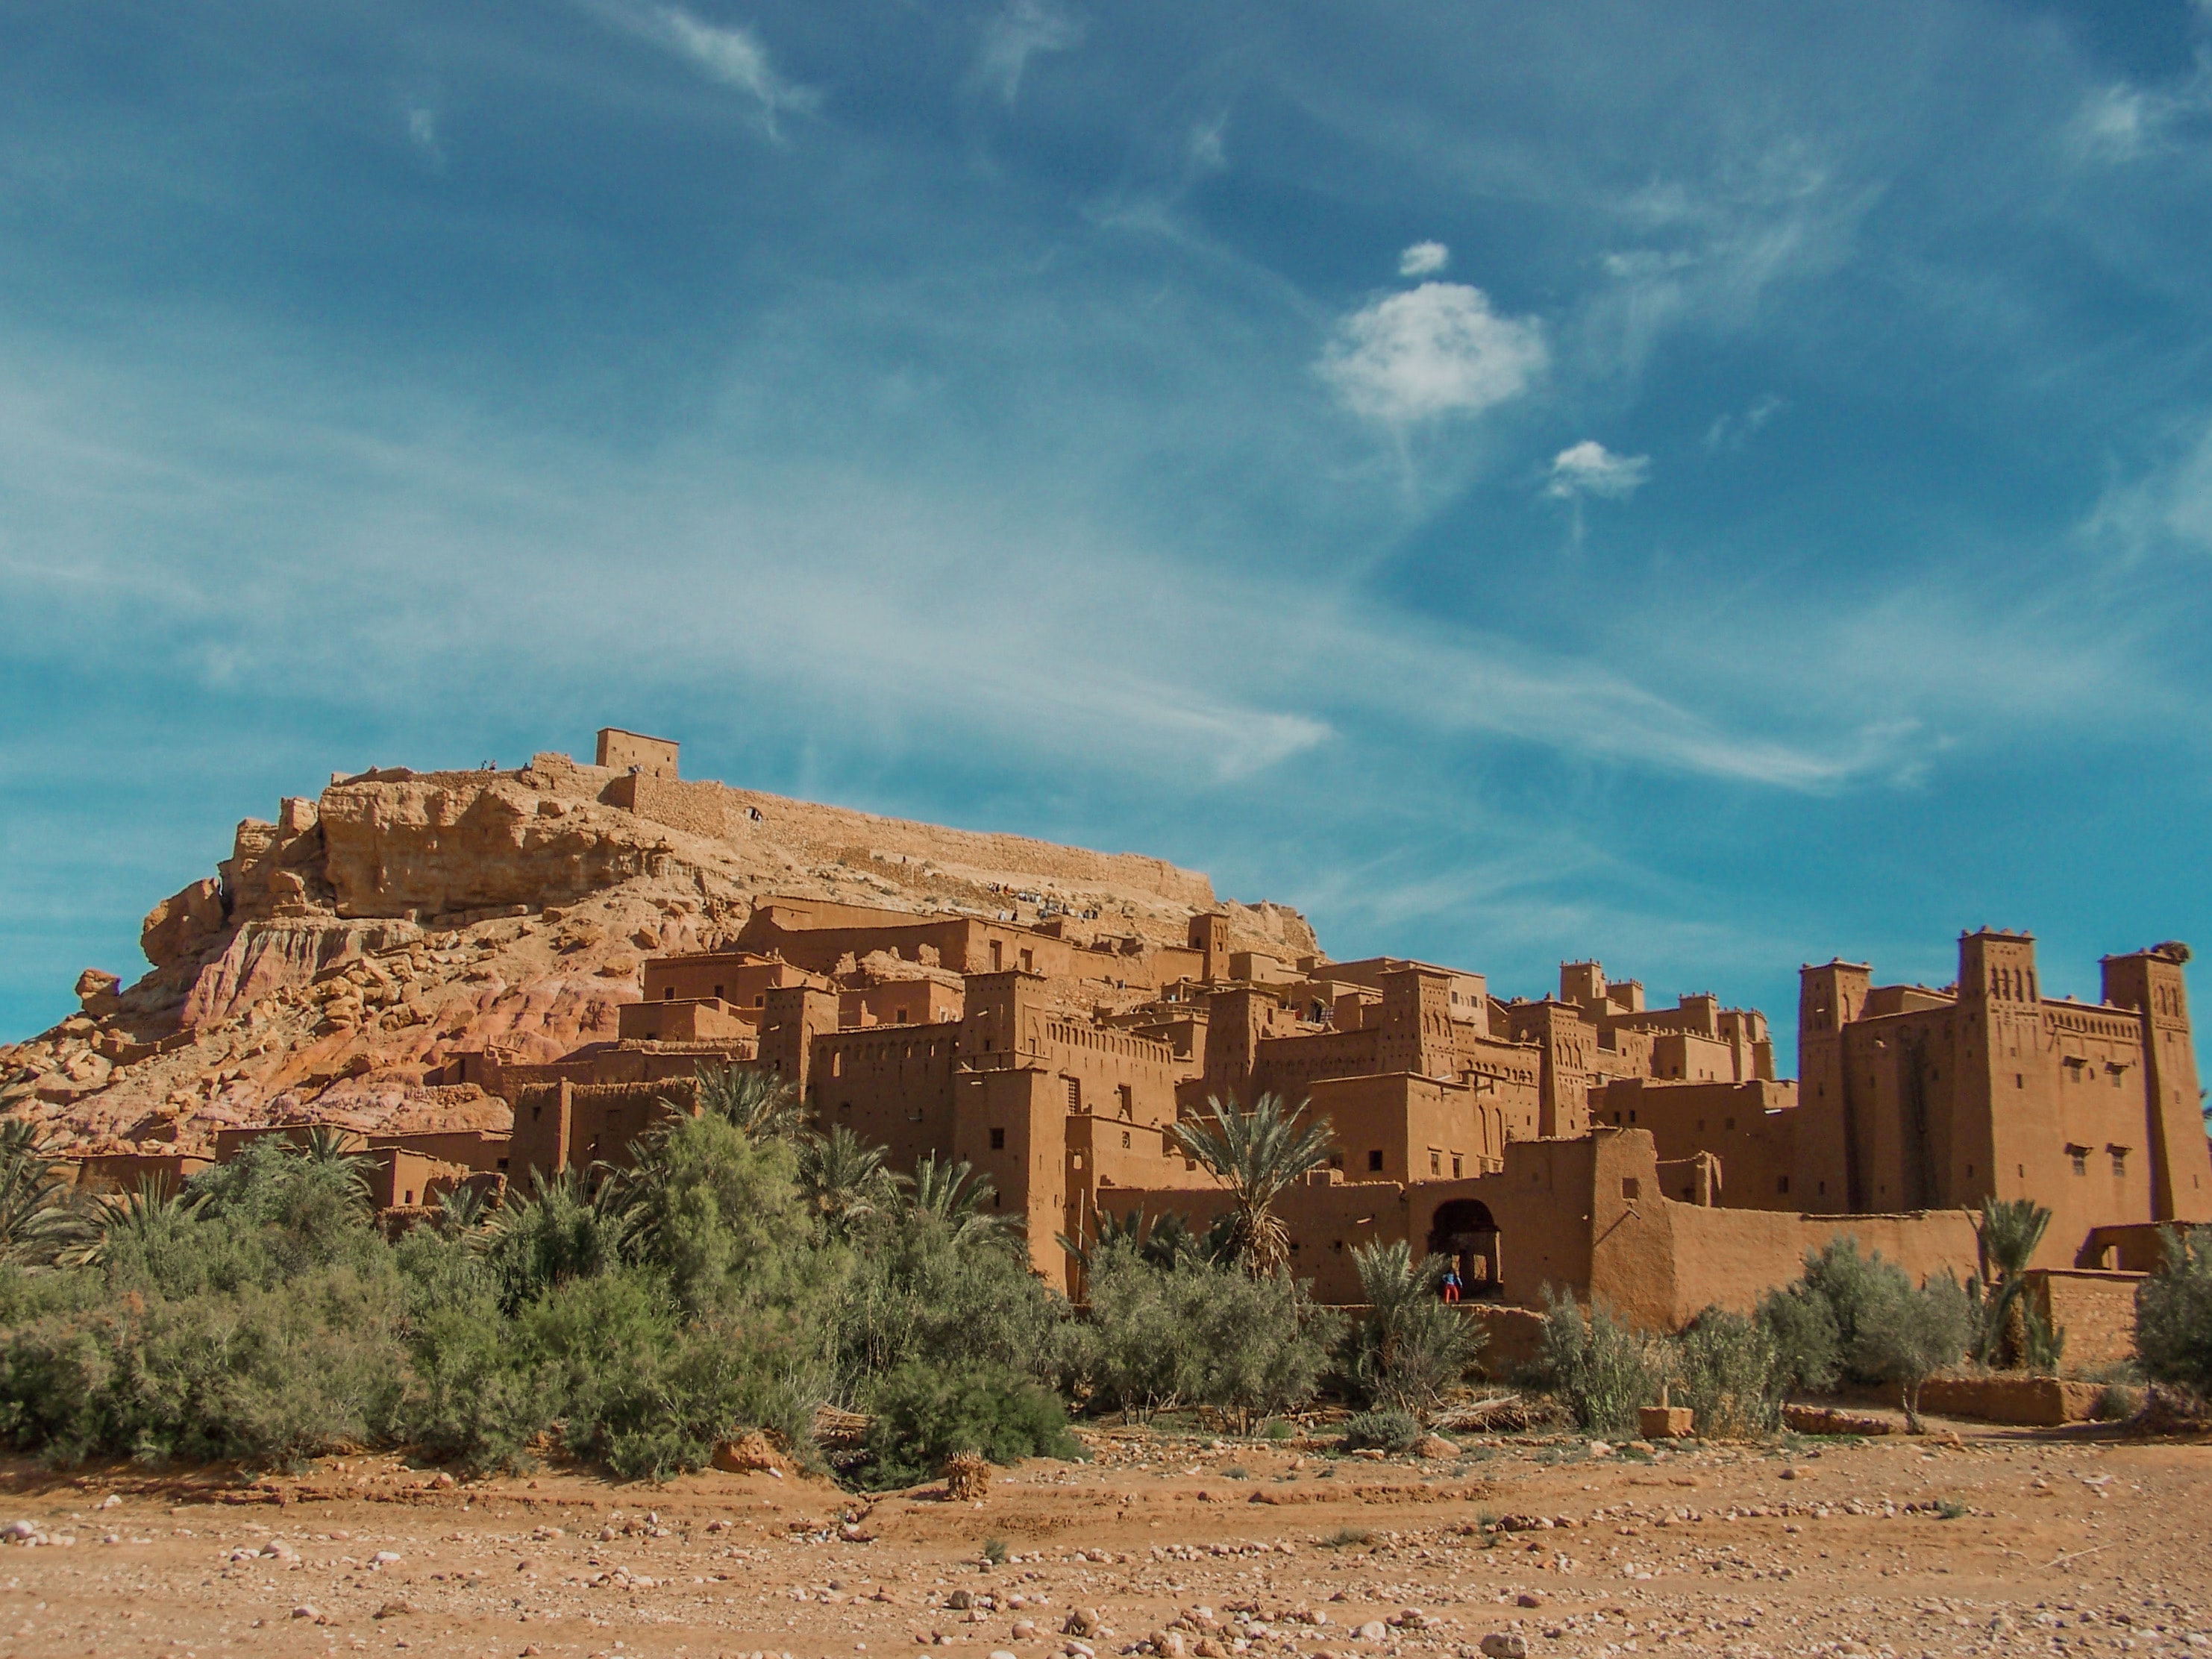 Day 07: Ouarzazate - Marrackech